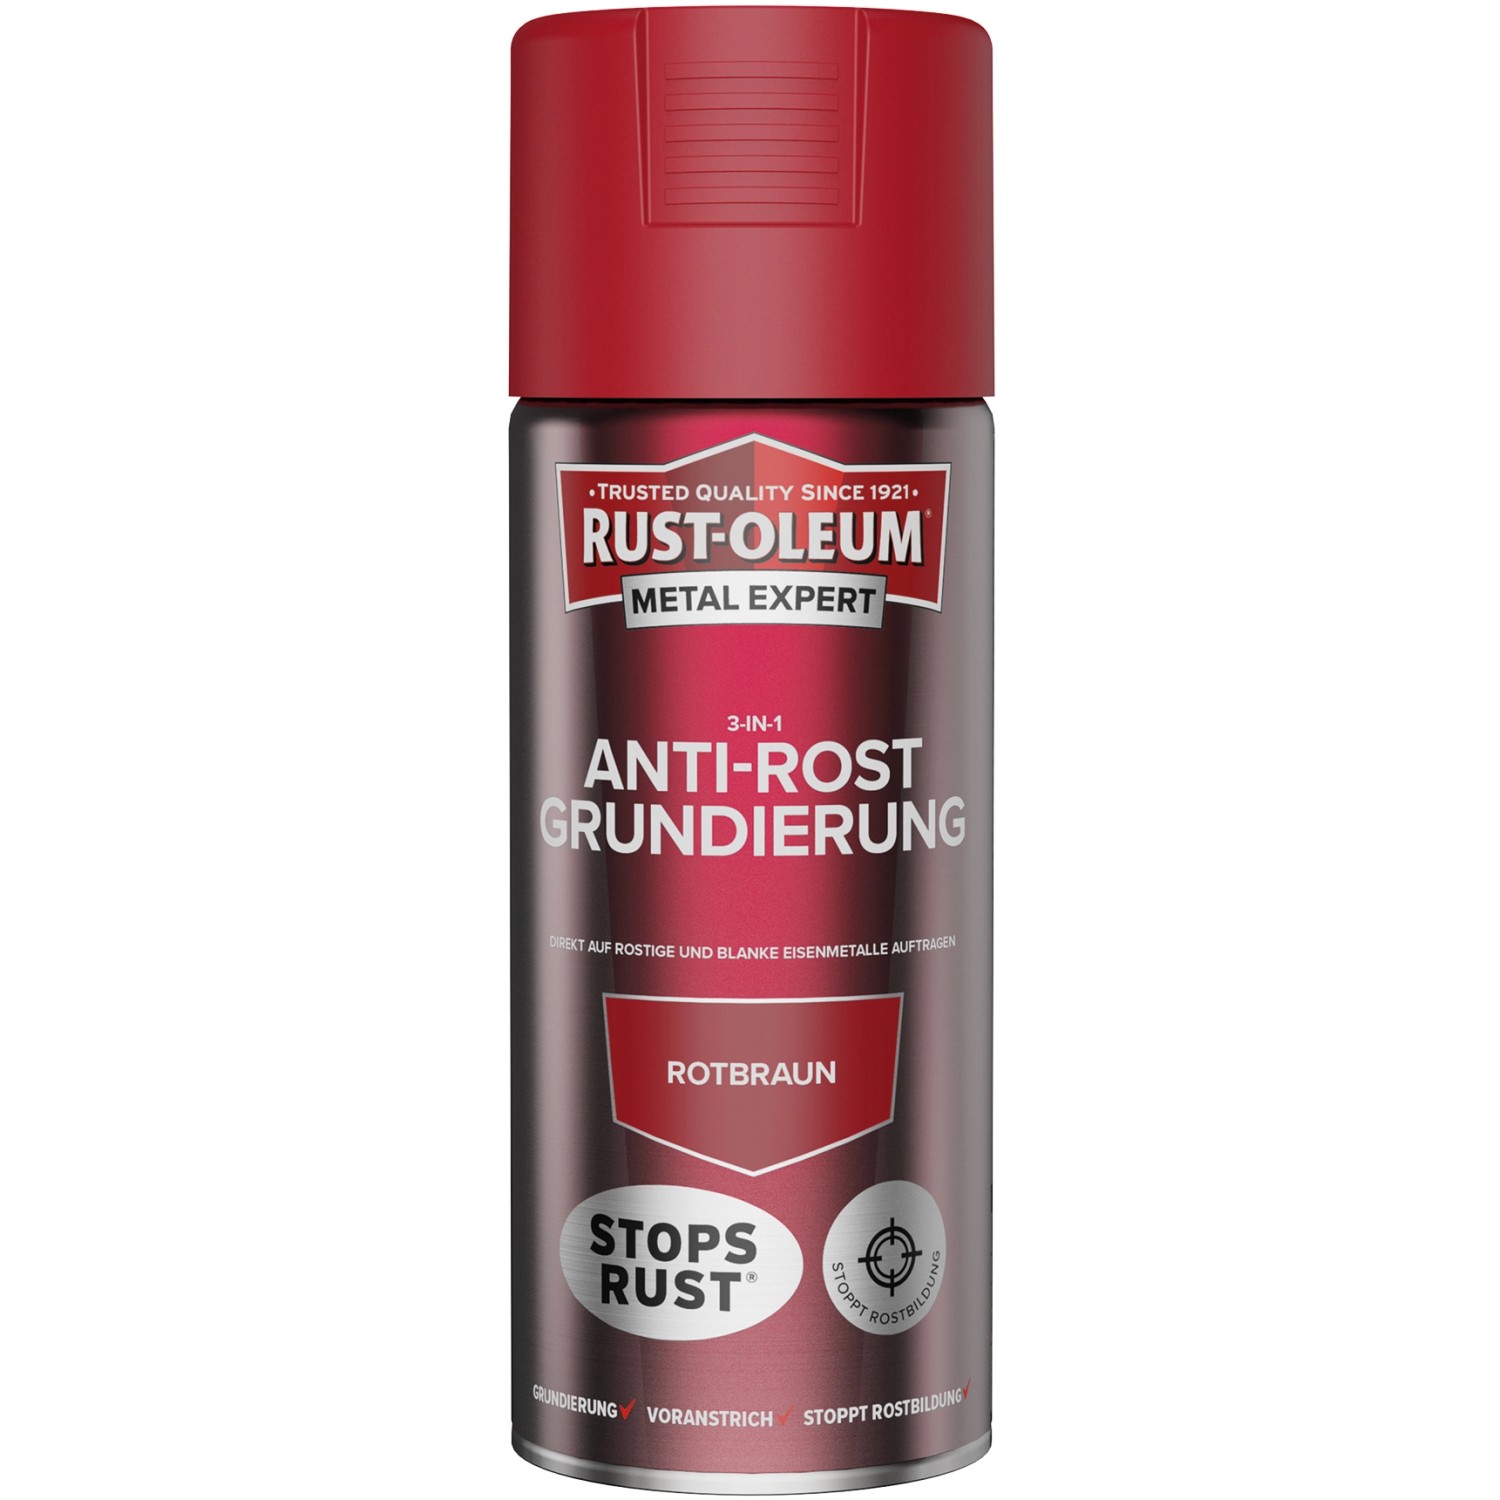 Rust-Oleum Metal Expert 3-in1 Anti-Rost Grundierung Sprühfarbe Rotbraun 400 ml von Rust-Oleum